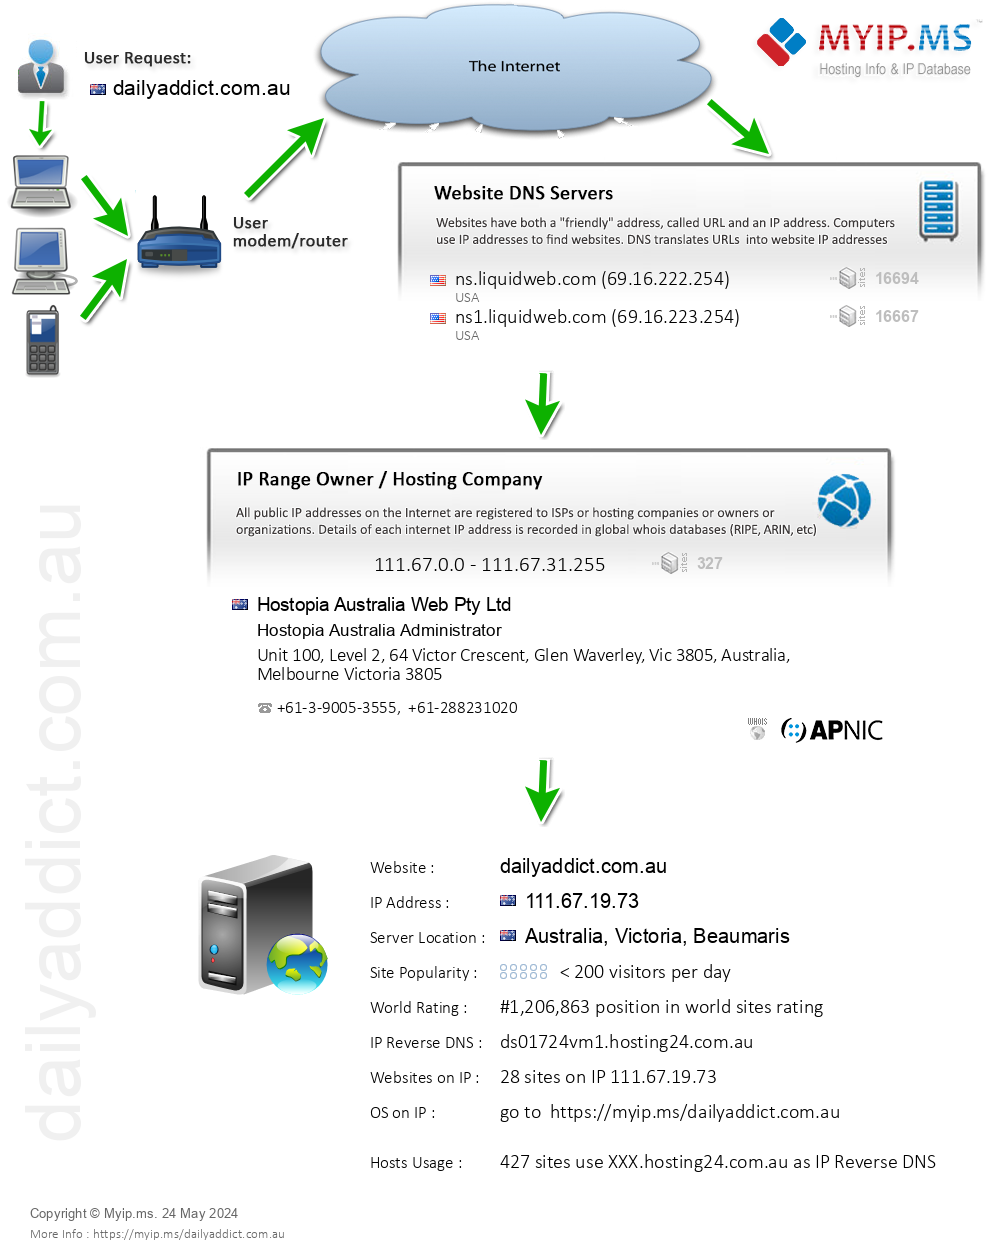 Dailyaddict.com.au - Website Hosting Visual IP Diagram